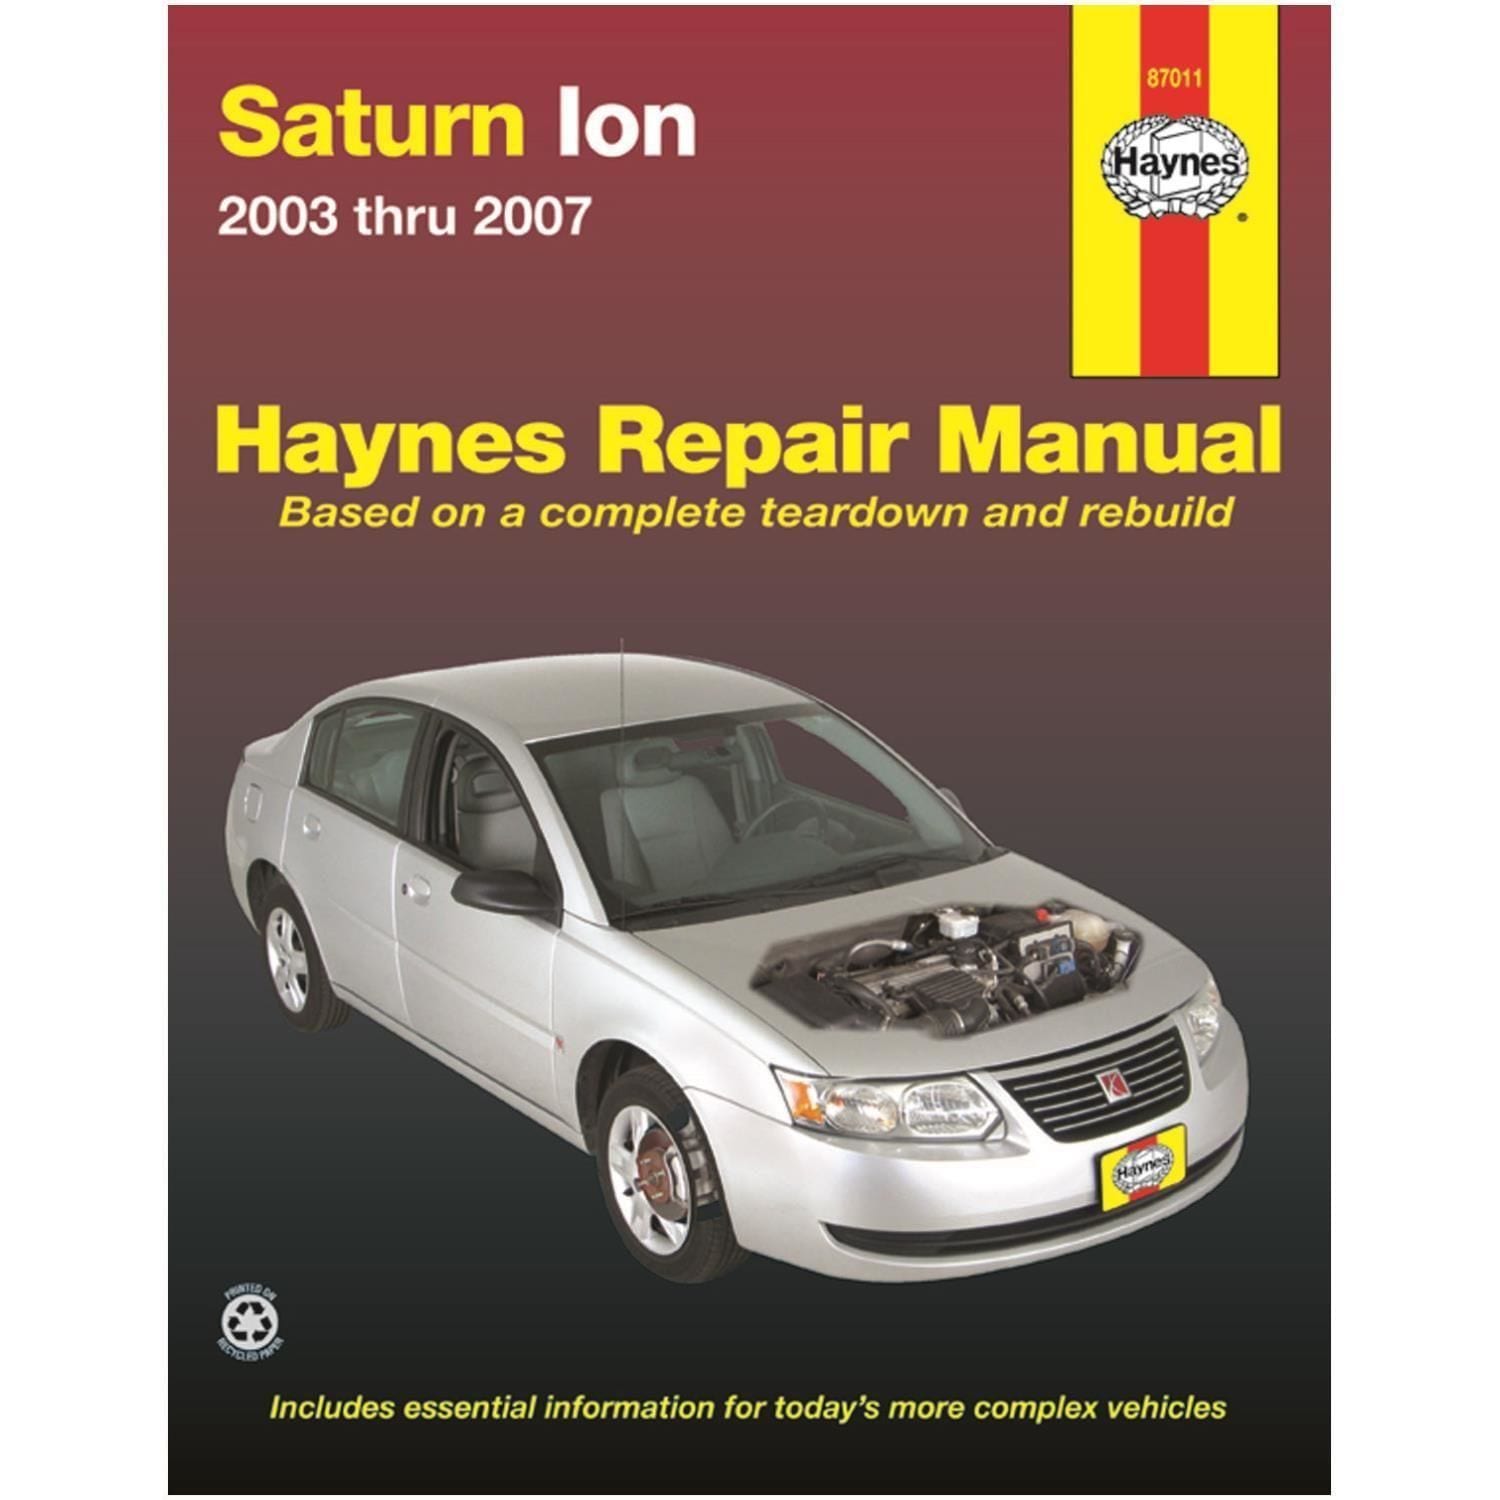 Haynes Vehicle Repair Manual 87011 